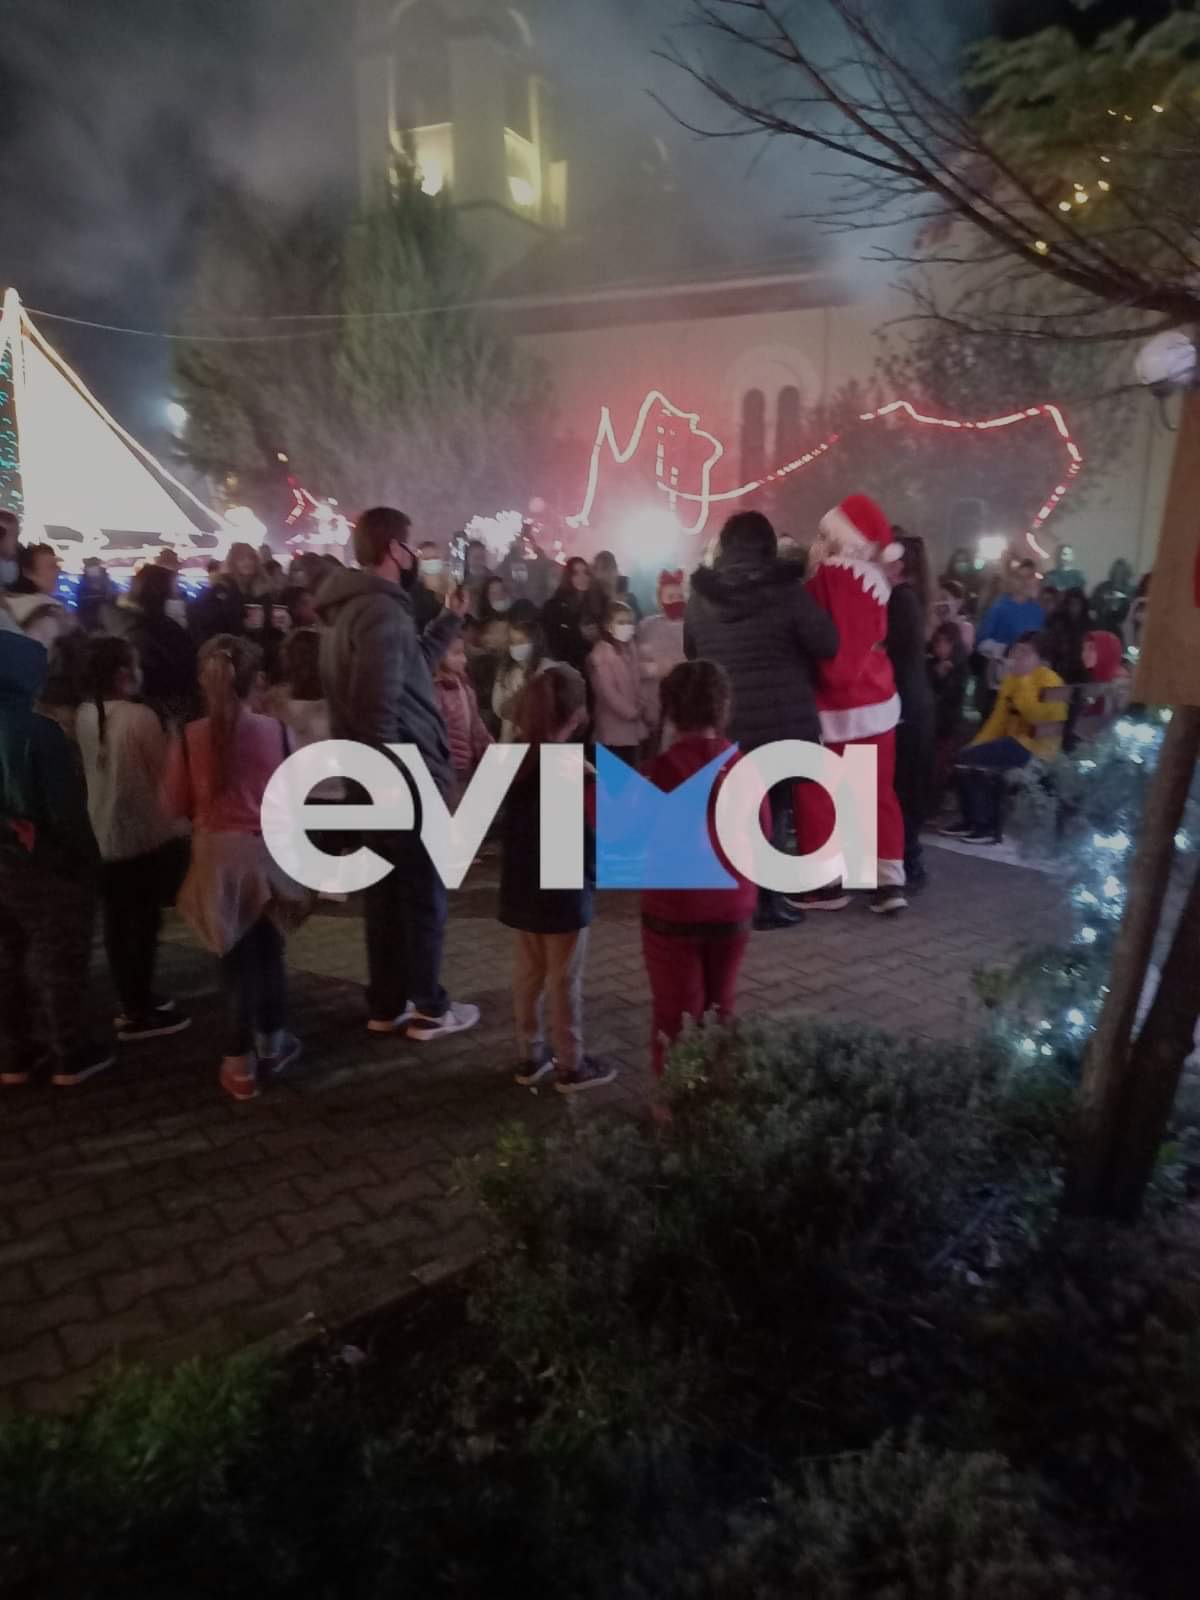 Ξεκίνησαν οι στολισμοί για τα Χριστούγεννα από την Καστέλλα του Δήμου Διρφύων Μεσσαπίων (pics&video)